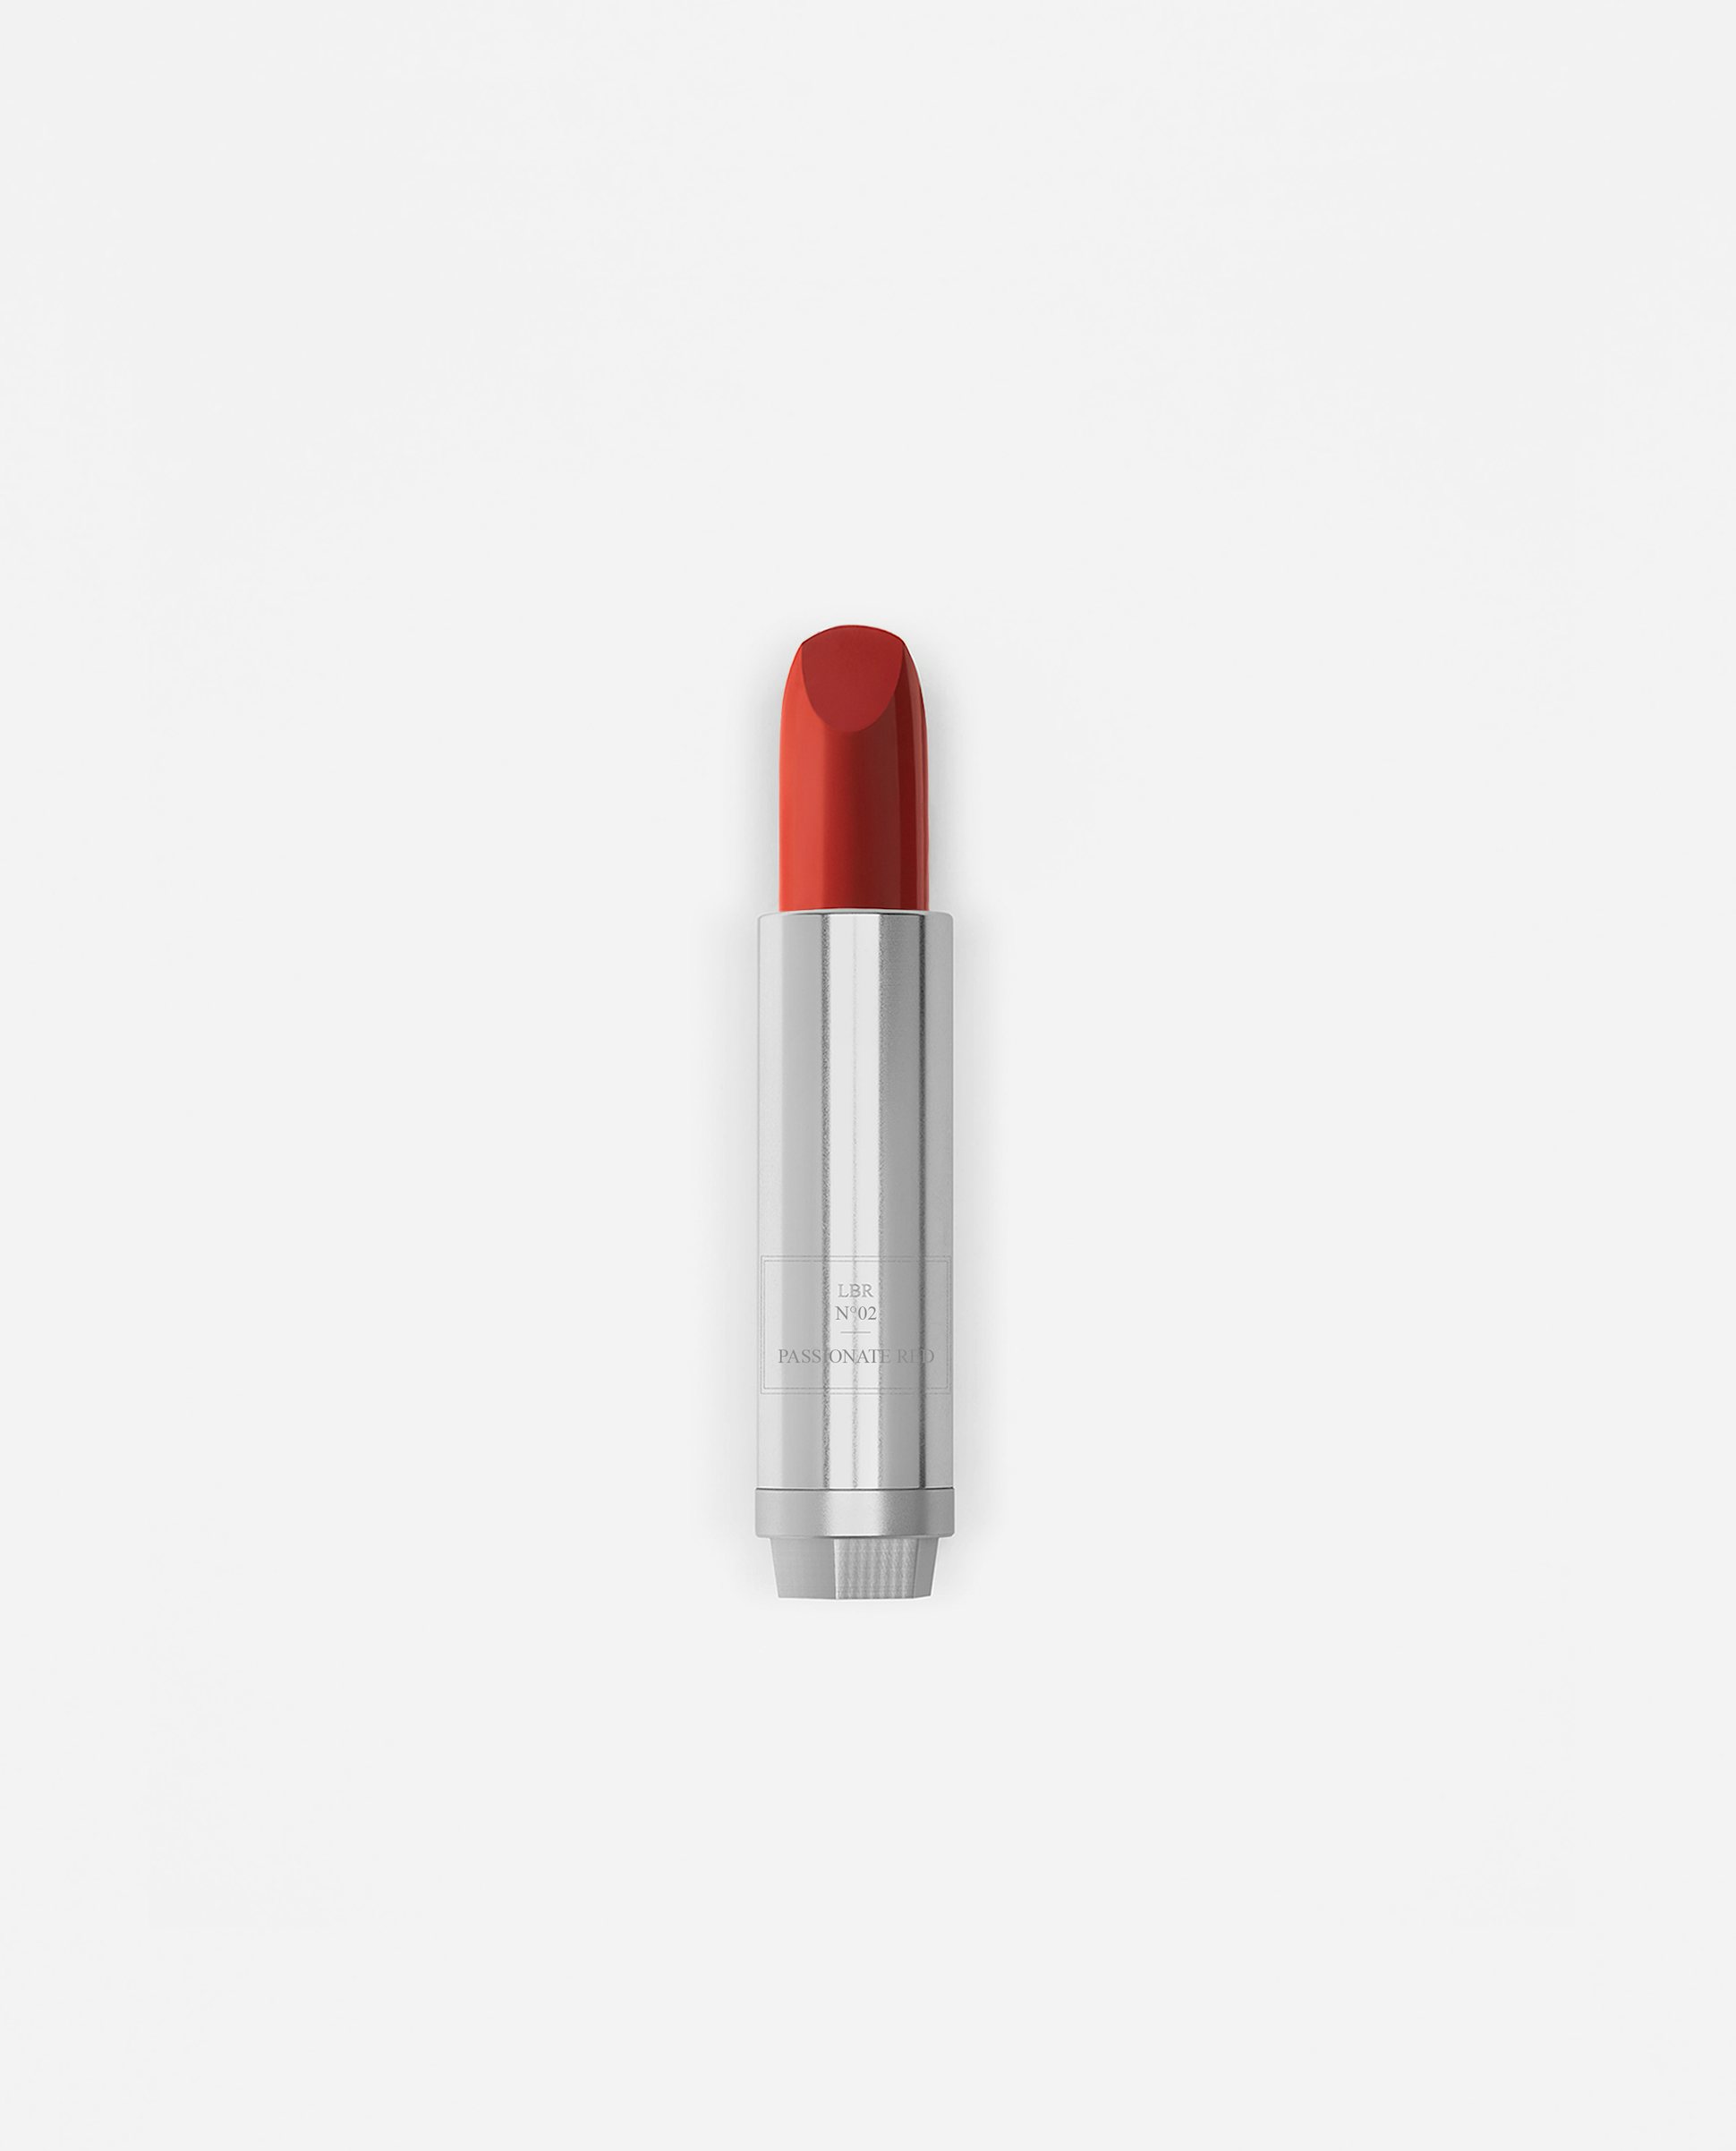 La bouche rouge Passionate Red lipstick in metal refill